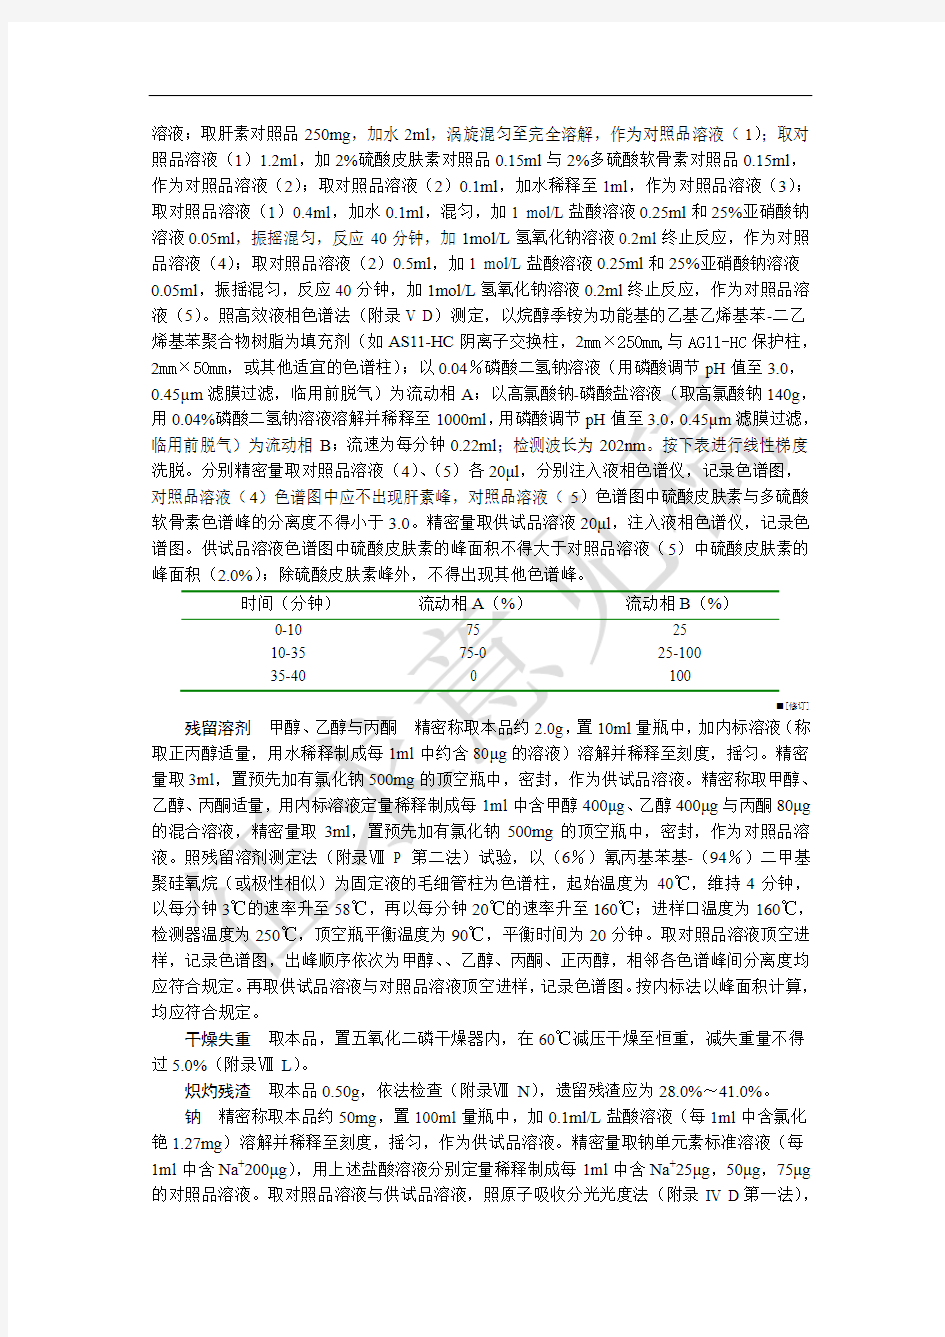 肝素钠_中国药典2015版公示标准